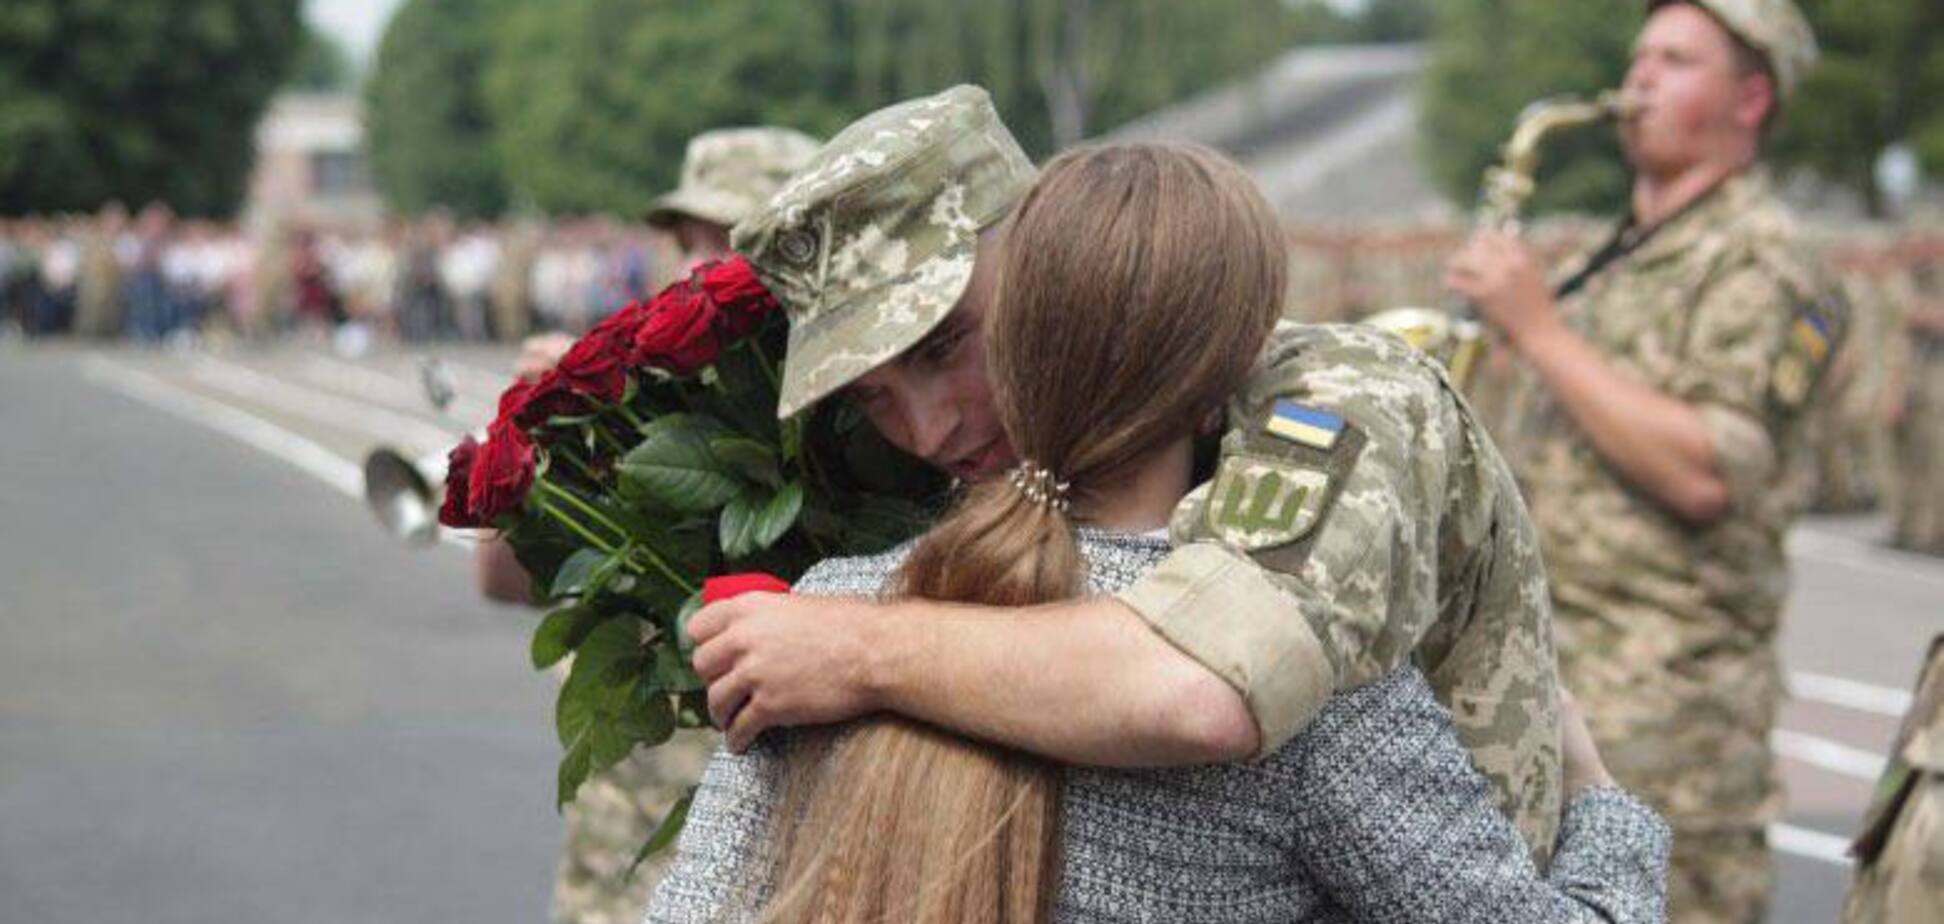 Всеукраинский проект поддержки женщин из семей военнослужащих был запущен в онлайн-формате